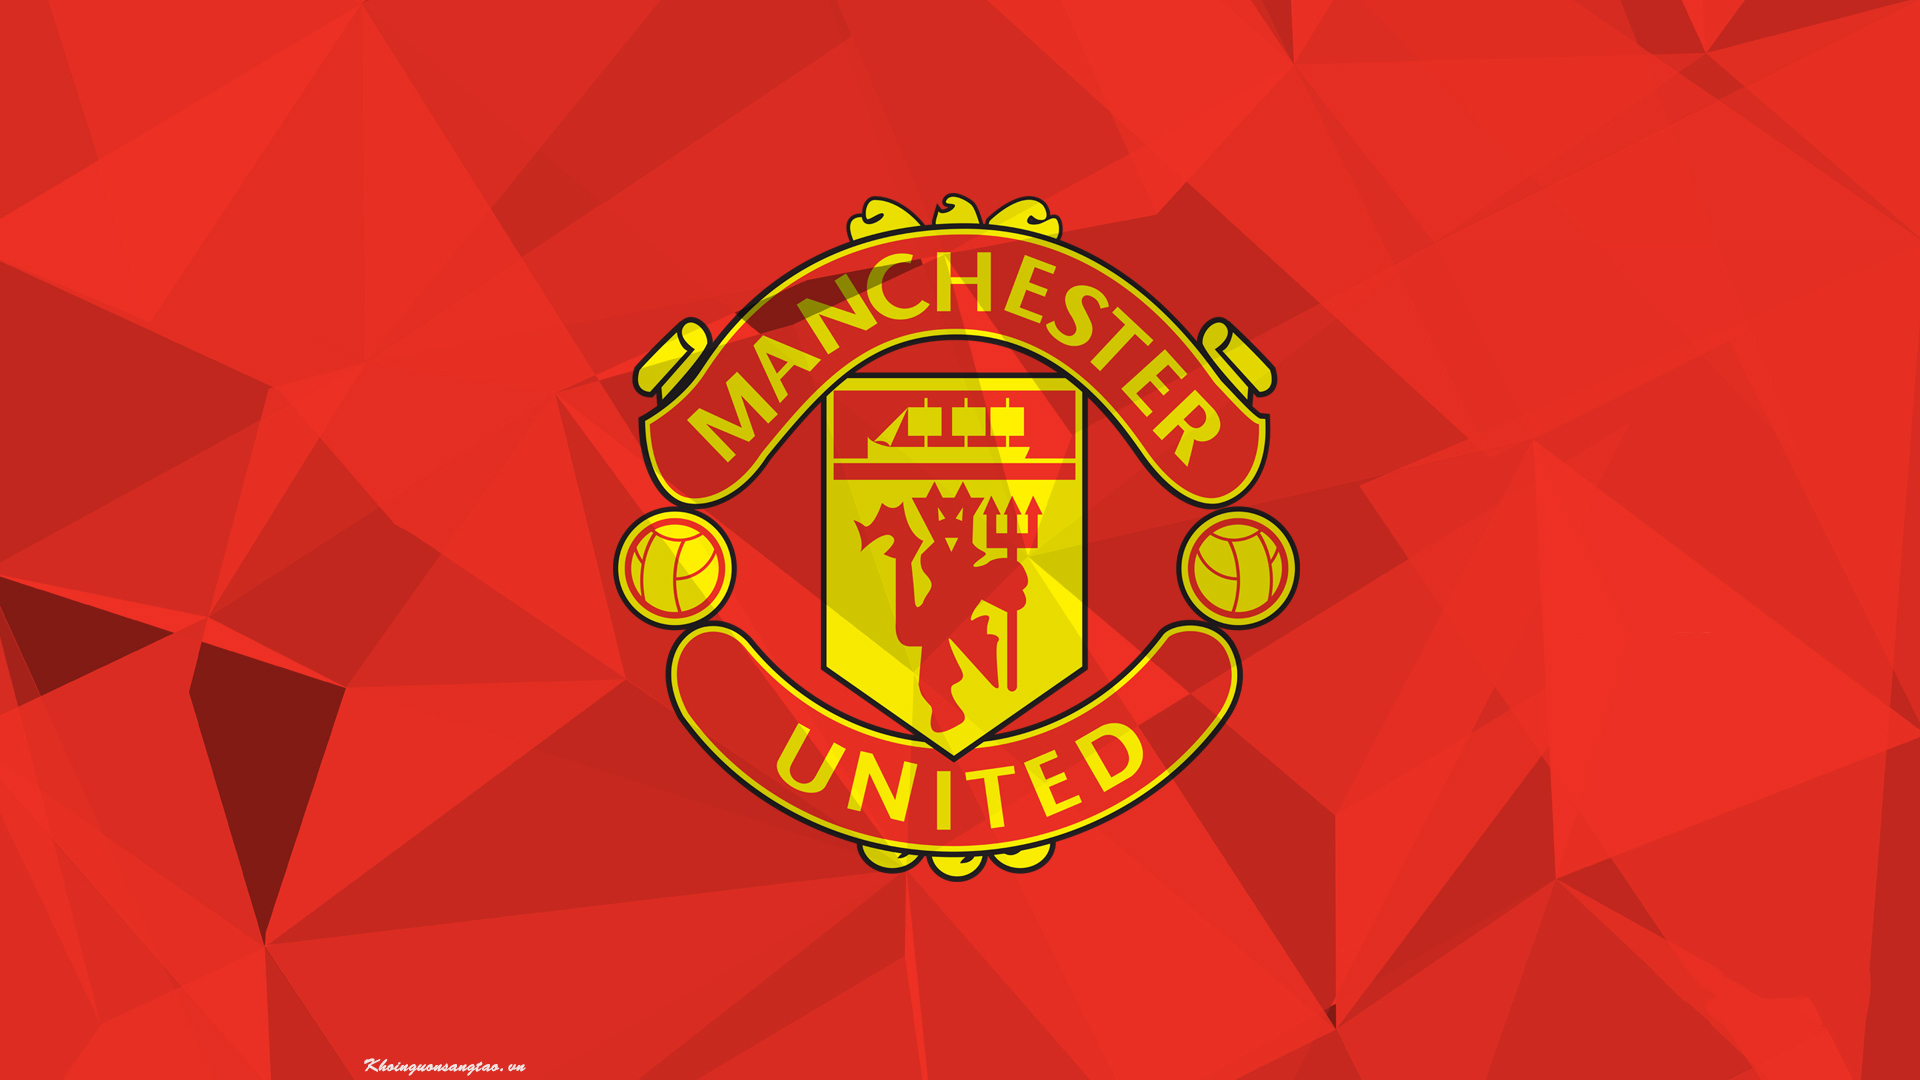 Tổng hợp ảnh logo MU đẹp nhất  Avatar Manchester Manchester united